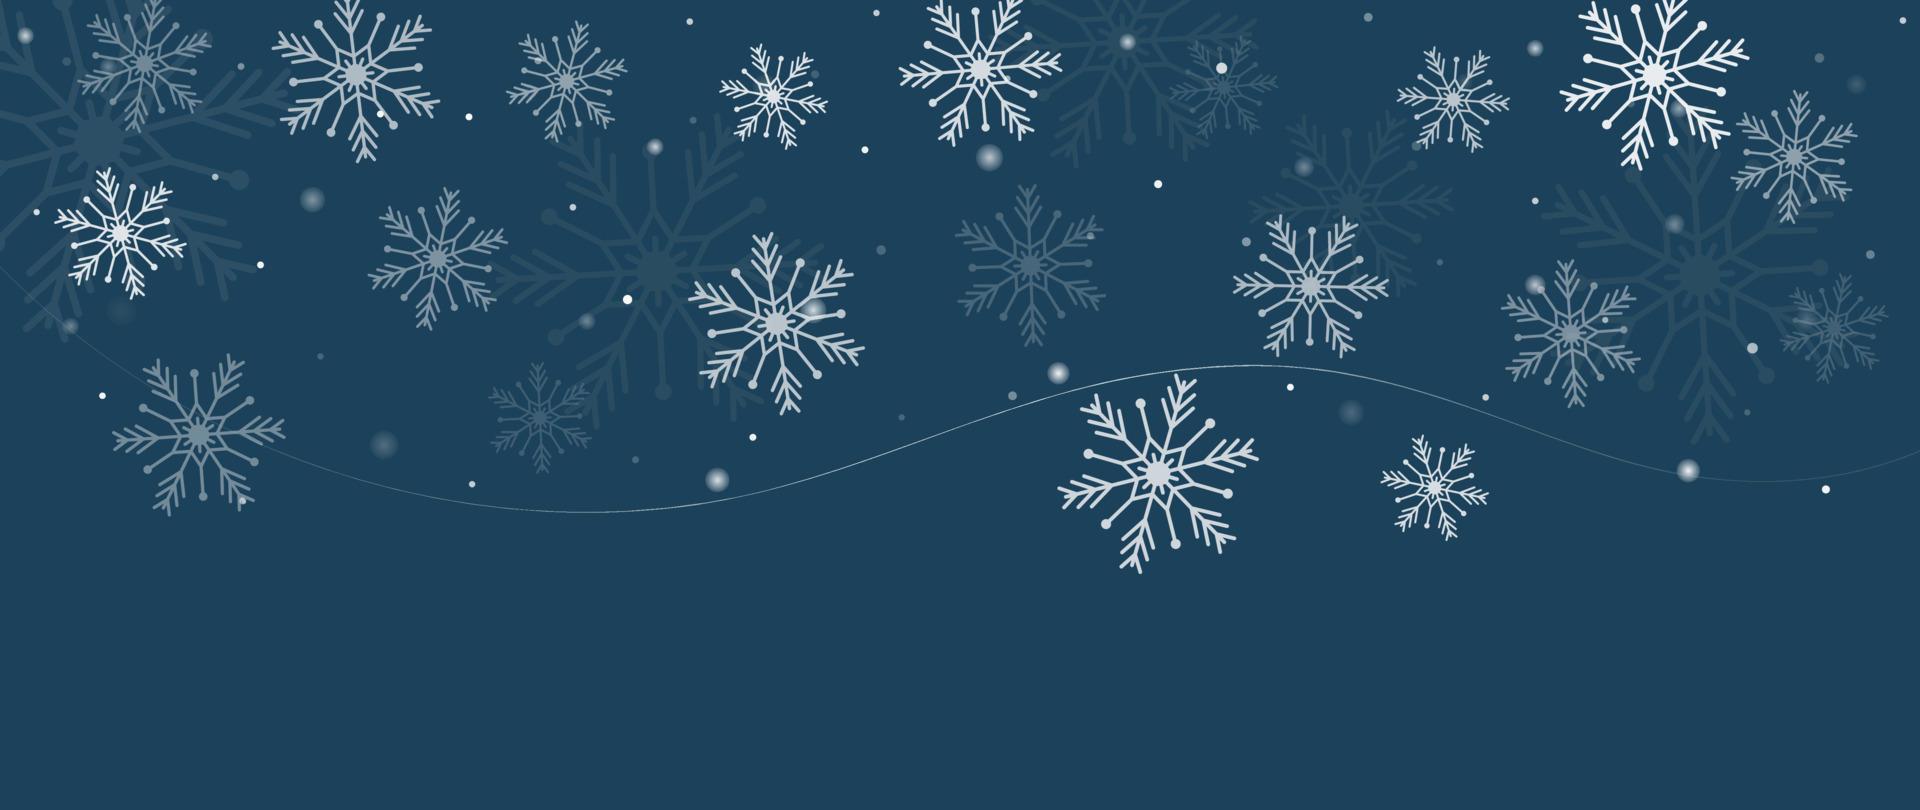 élégante illustration vectorielle de flocon de neige hiver fond. flocon de neige décoratif de luxe et éclat sur fond bleu foncé. conception adaptée à la carte d'invitation, aux voeux, au papier peint, à l'affiche, à la bannière. vecteur